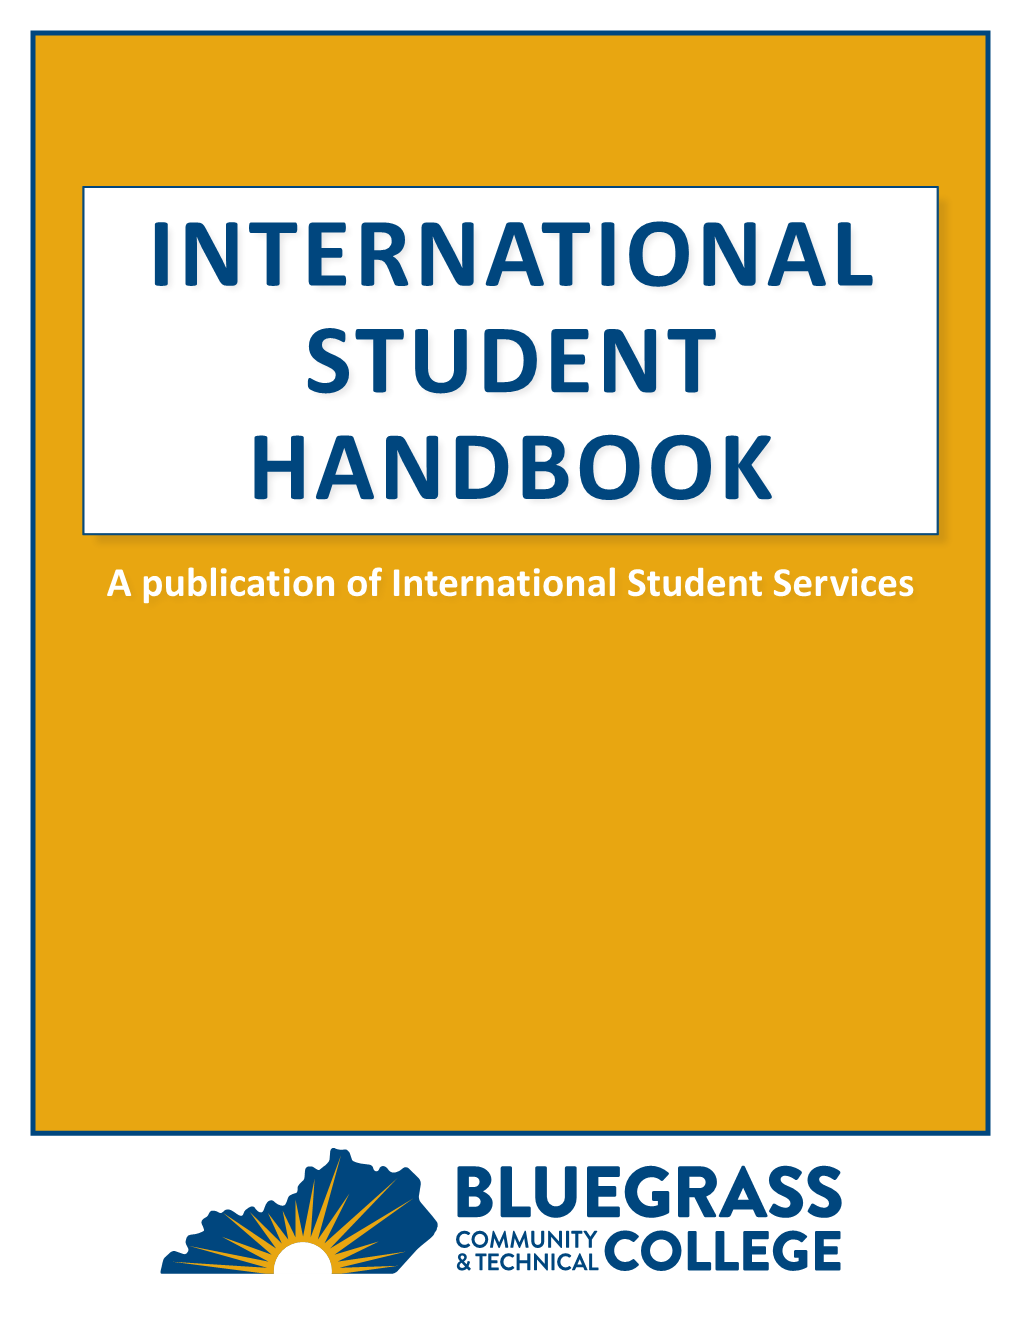 View the International Student Handbook Here